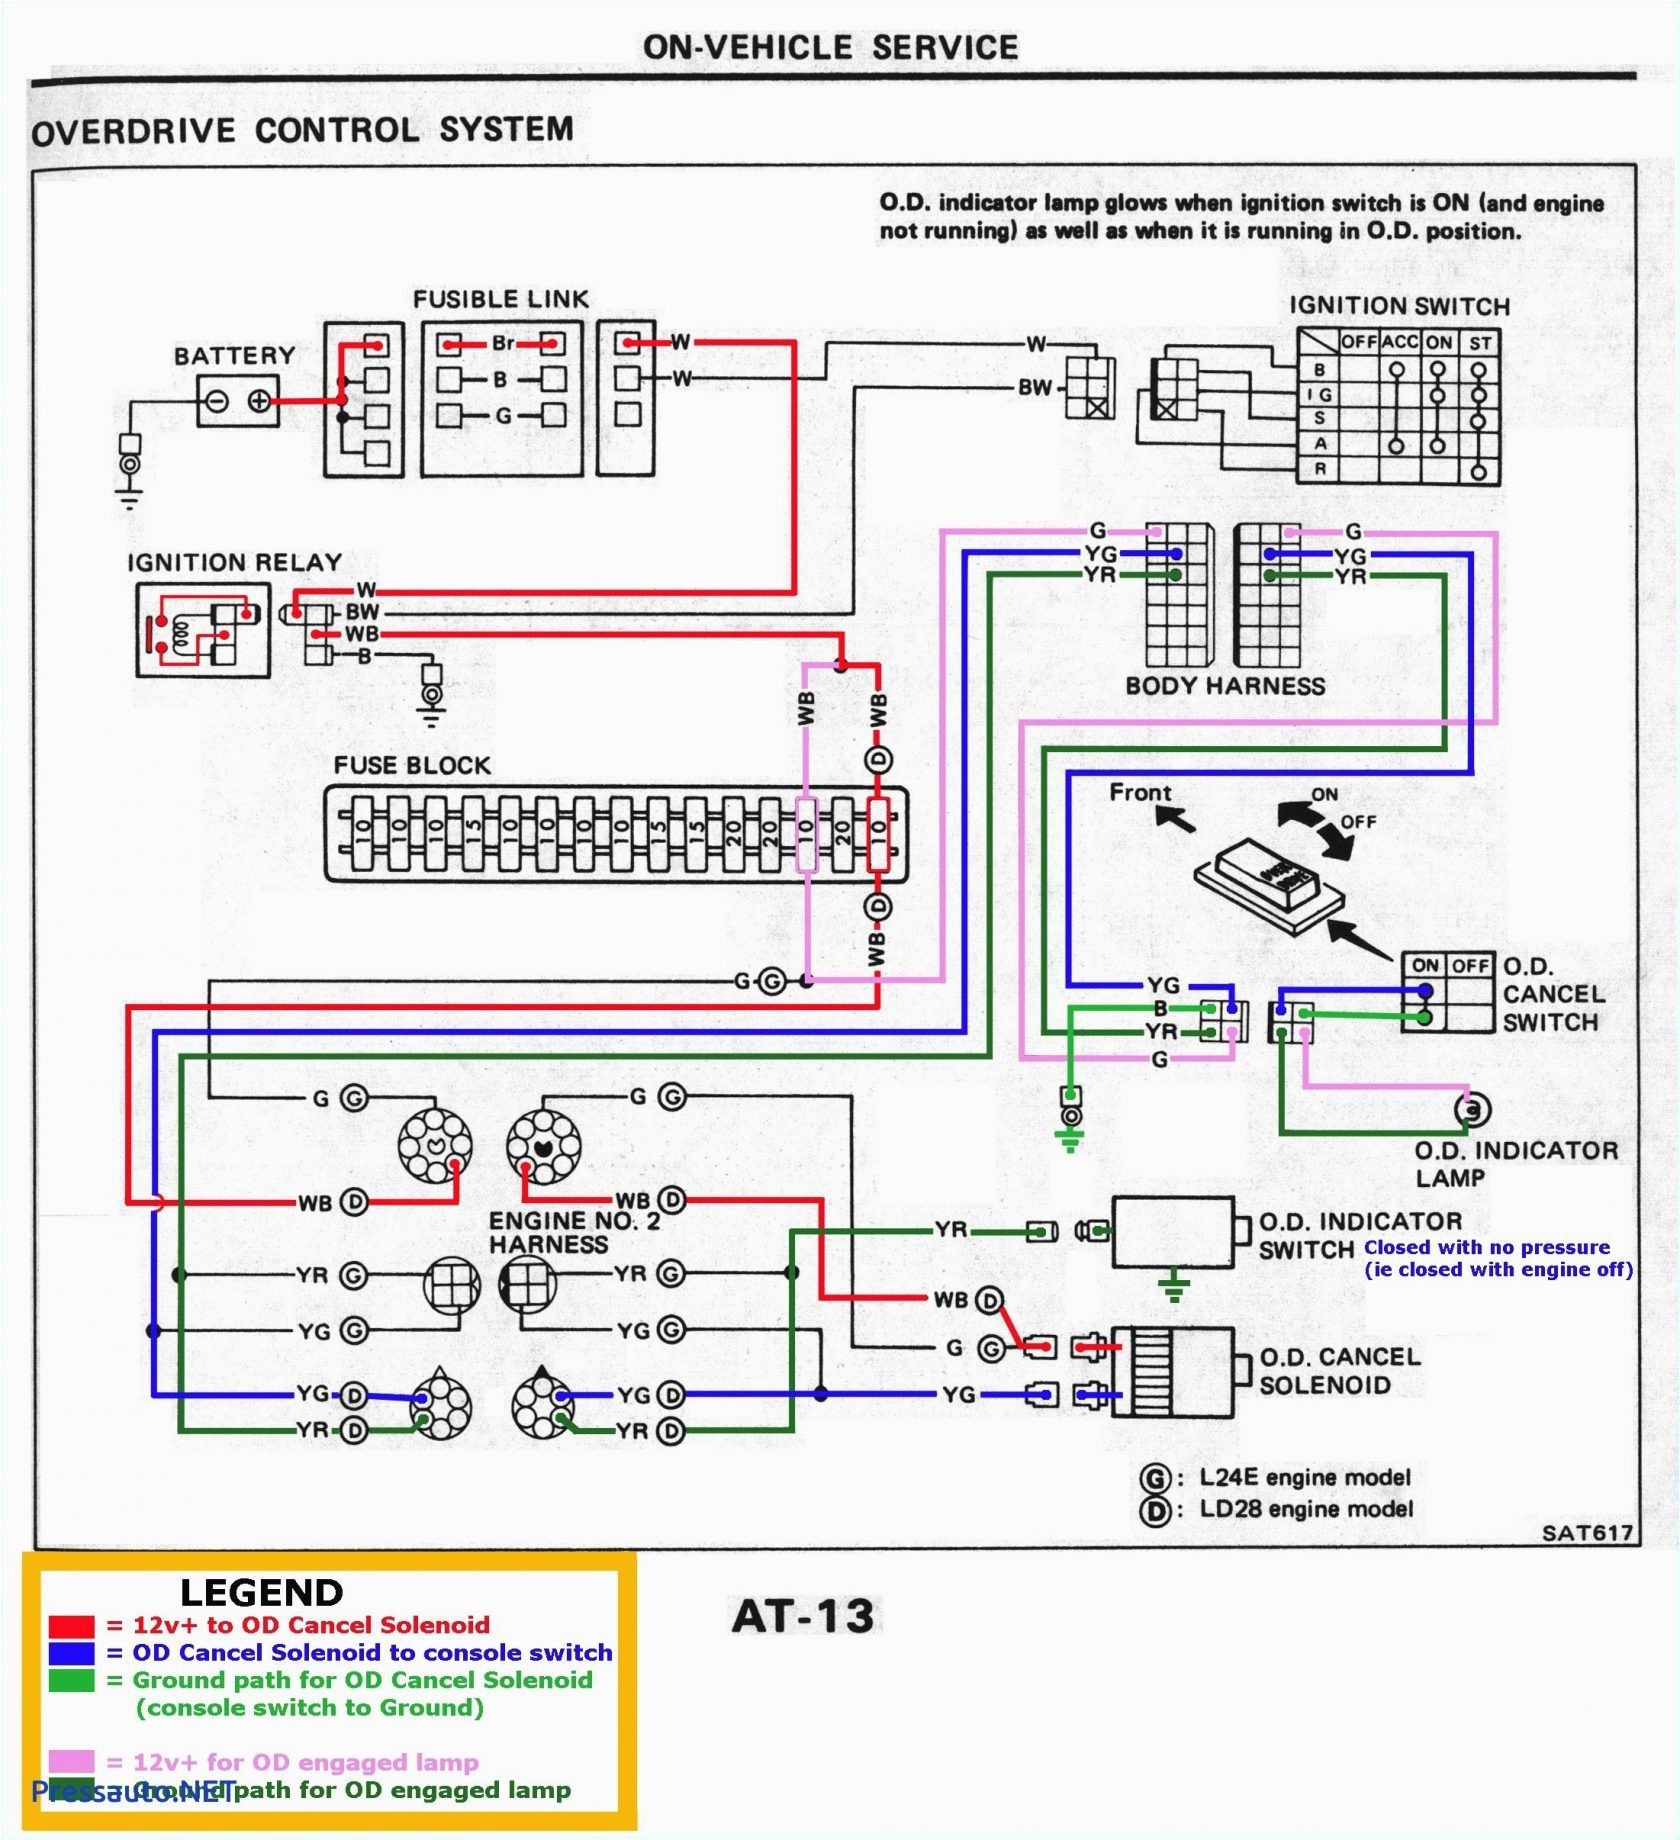 suzuki door schematic wiring diagram suzuki lights wiring diagram wiring diagram viewsuzuki lights wiring diagram wiring